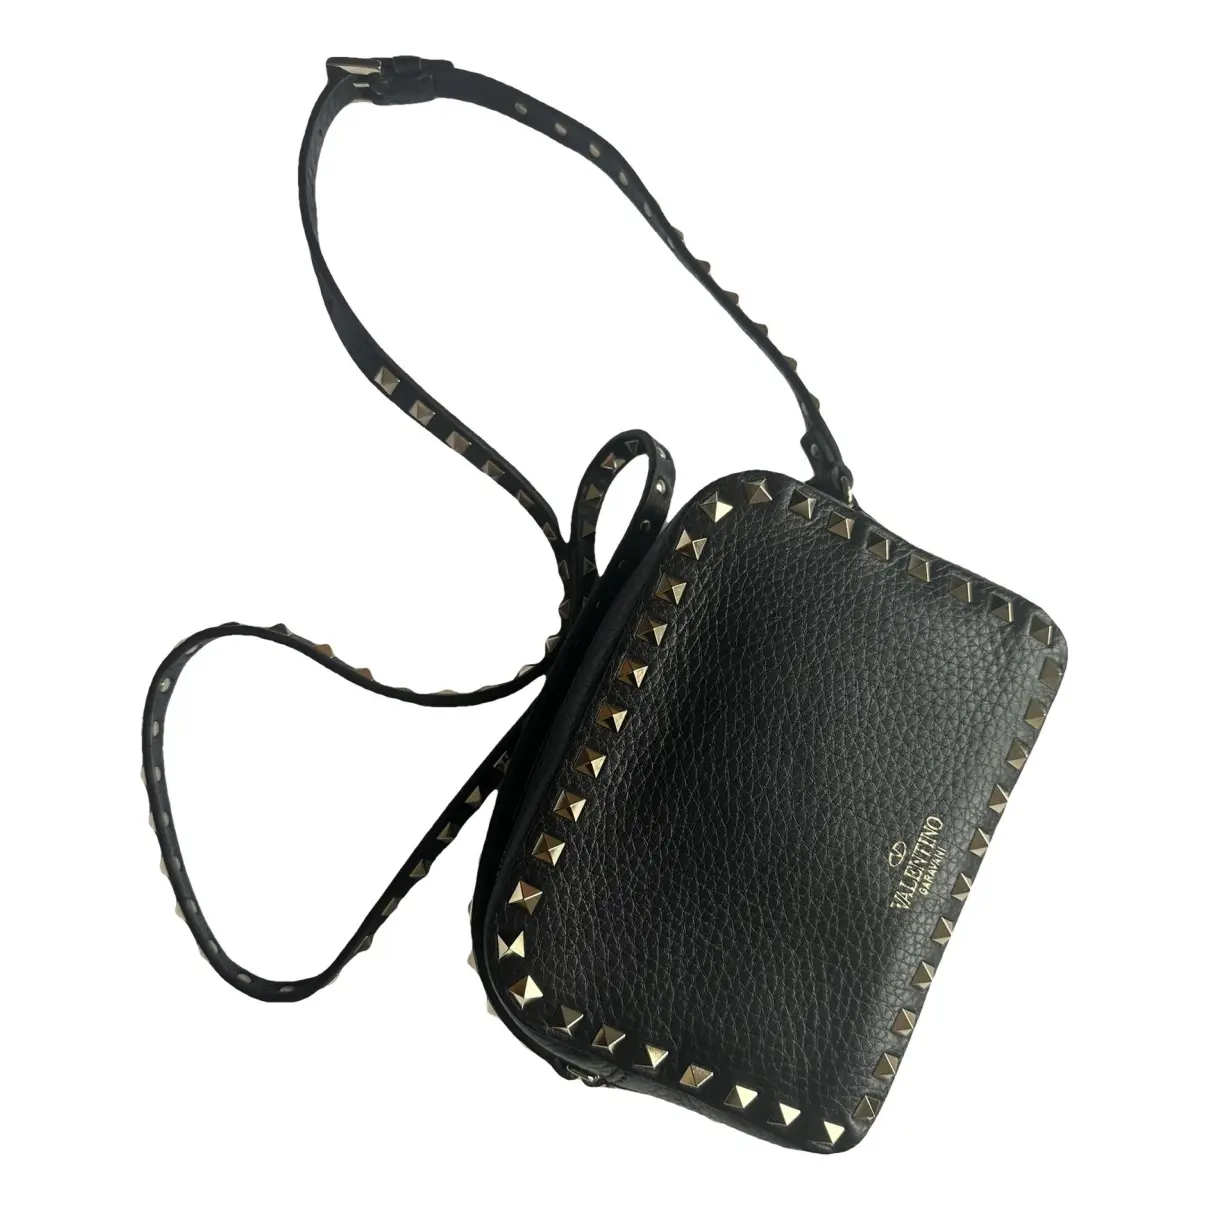 Rockstud leather handbag